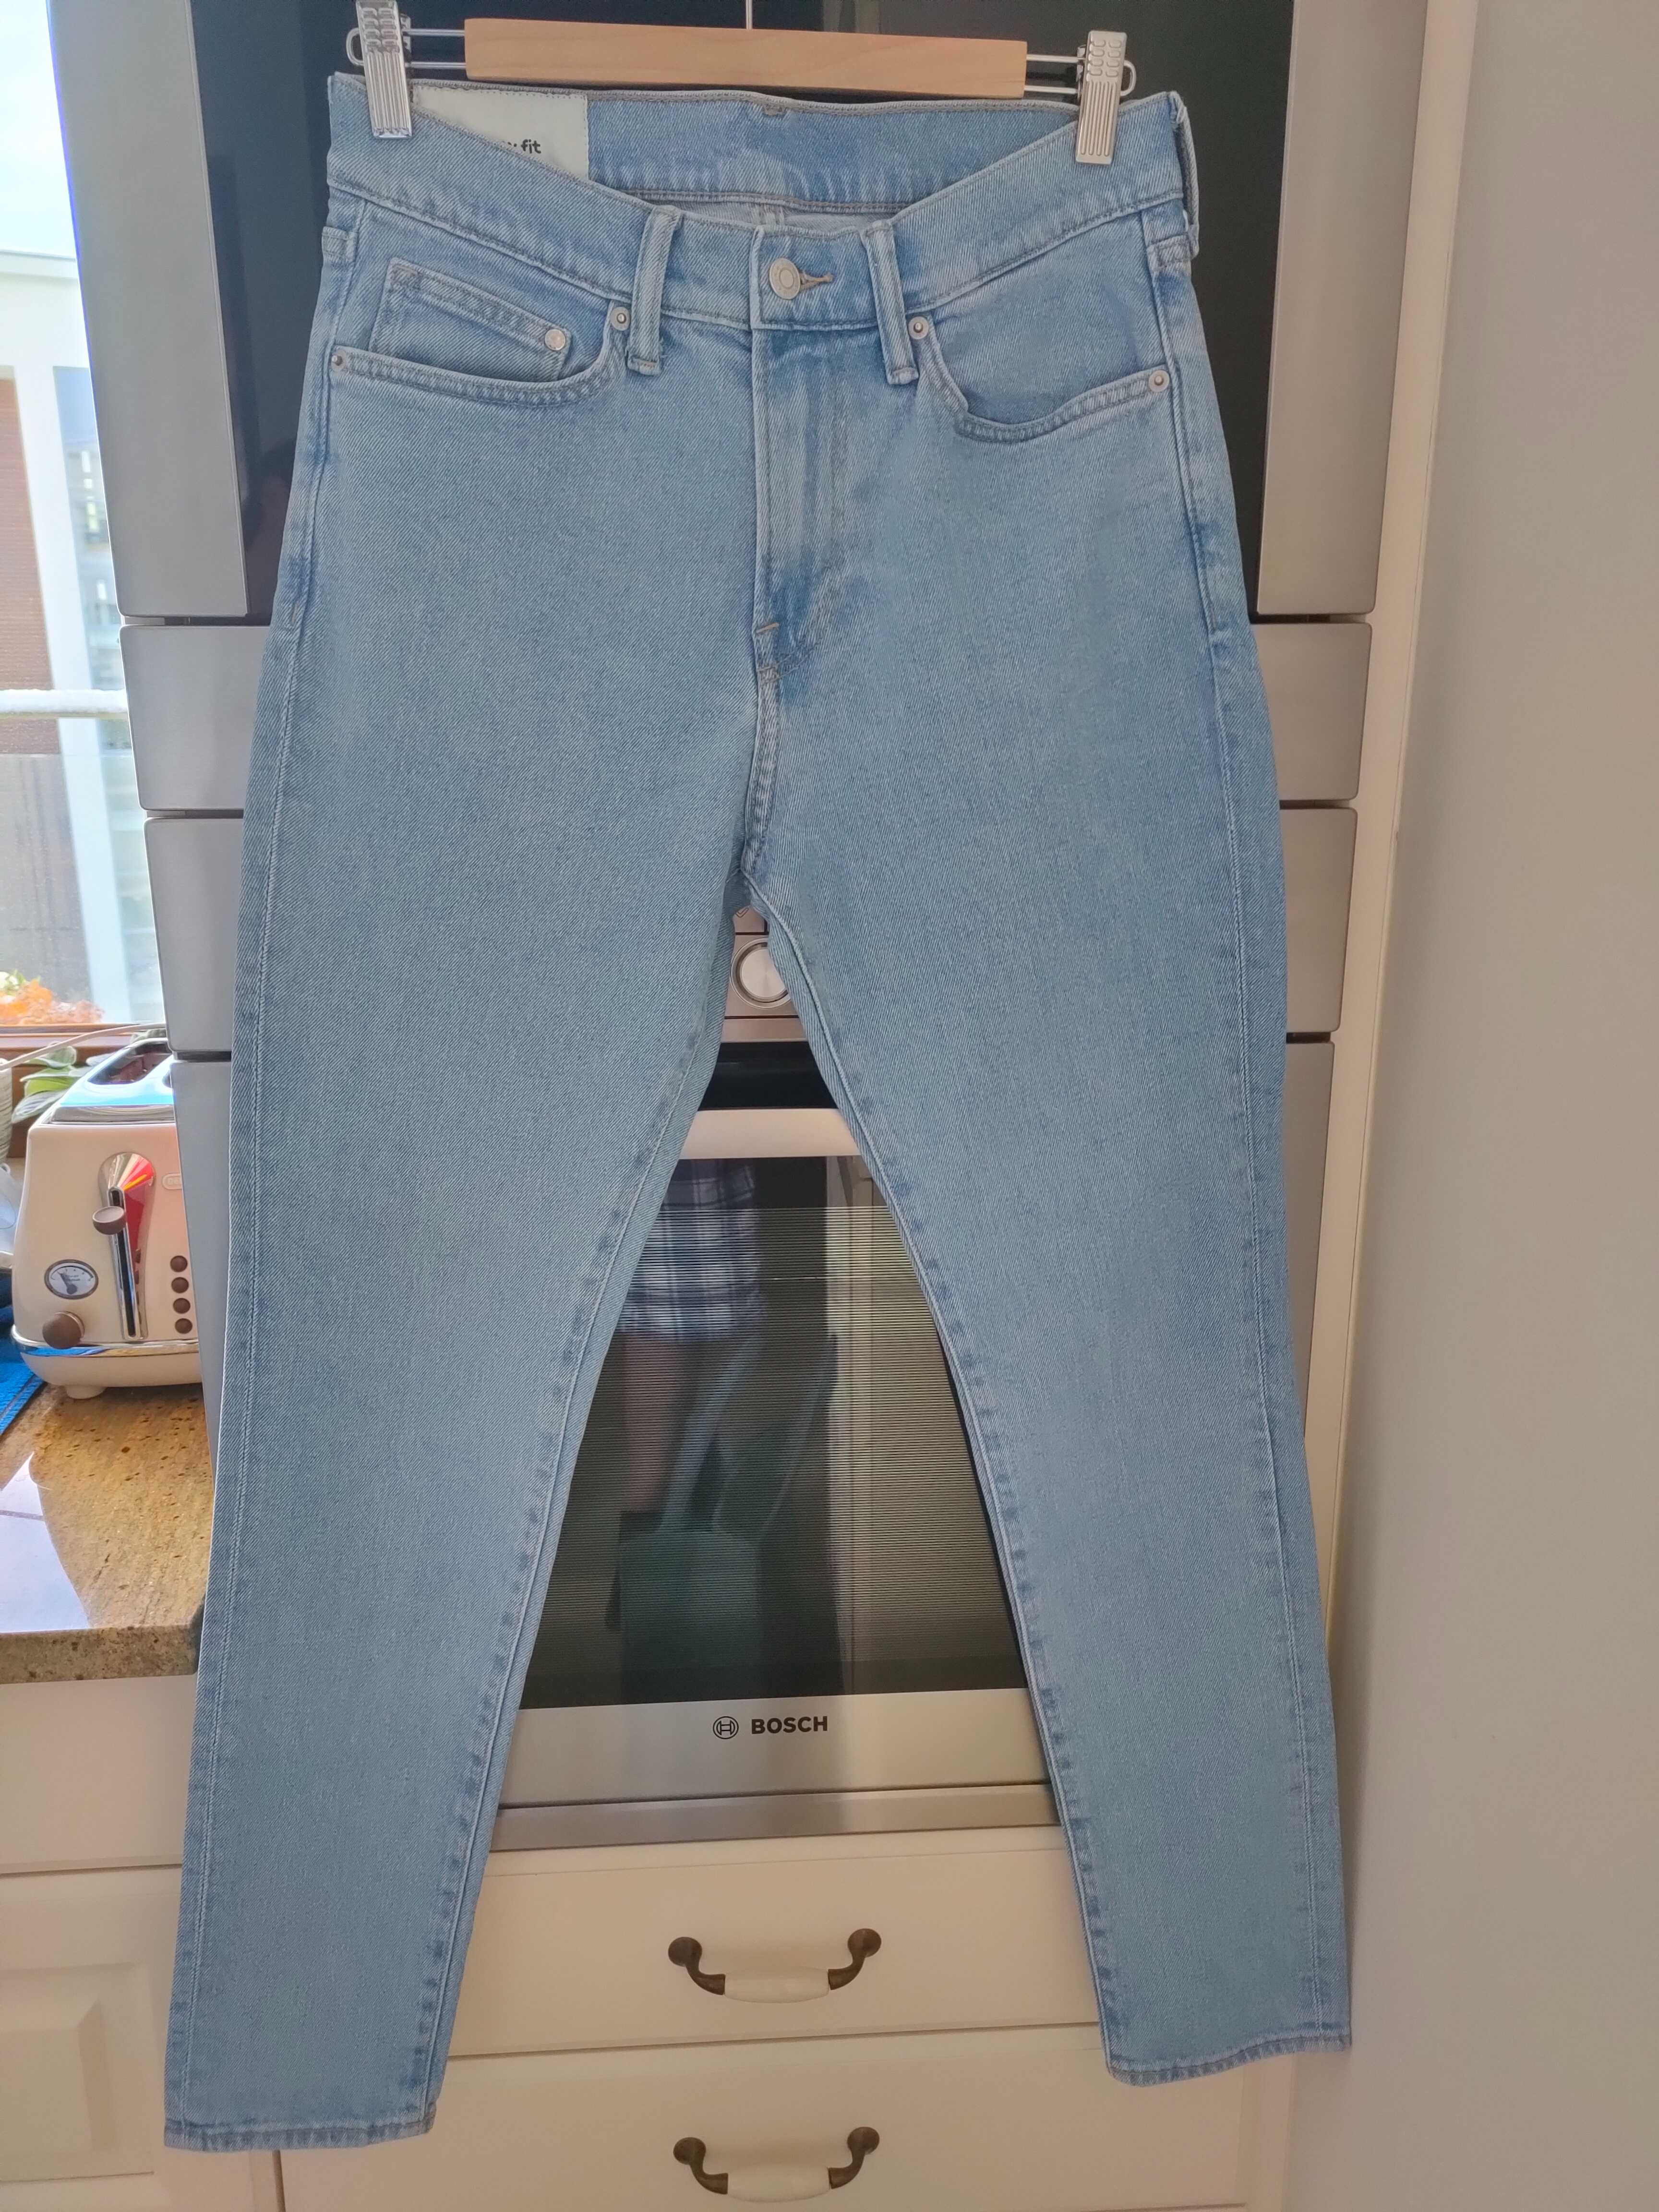 Spodnie jeans marki H&M rozm. EUR 31/32 dla chłopca 14-15 lat